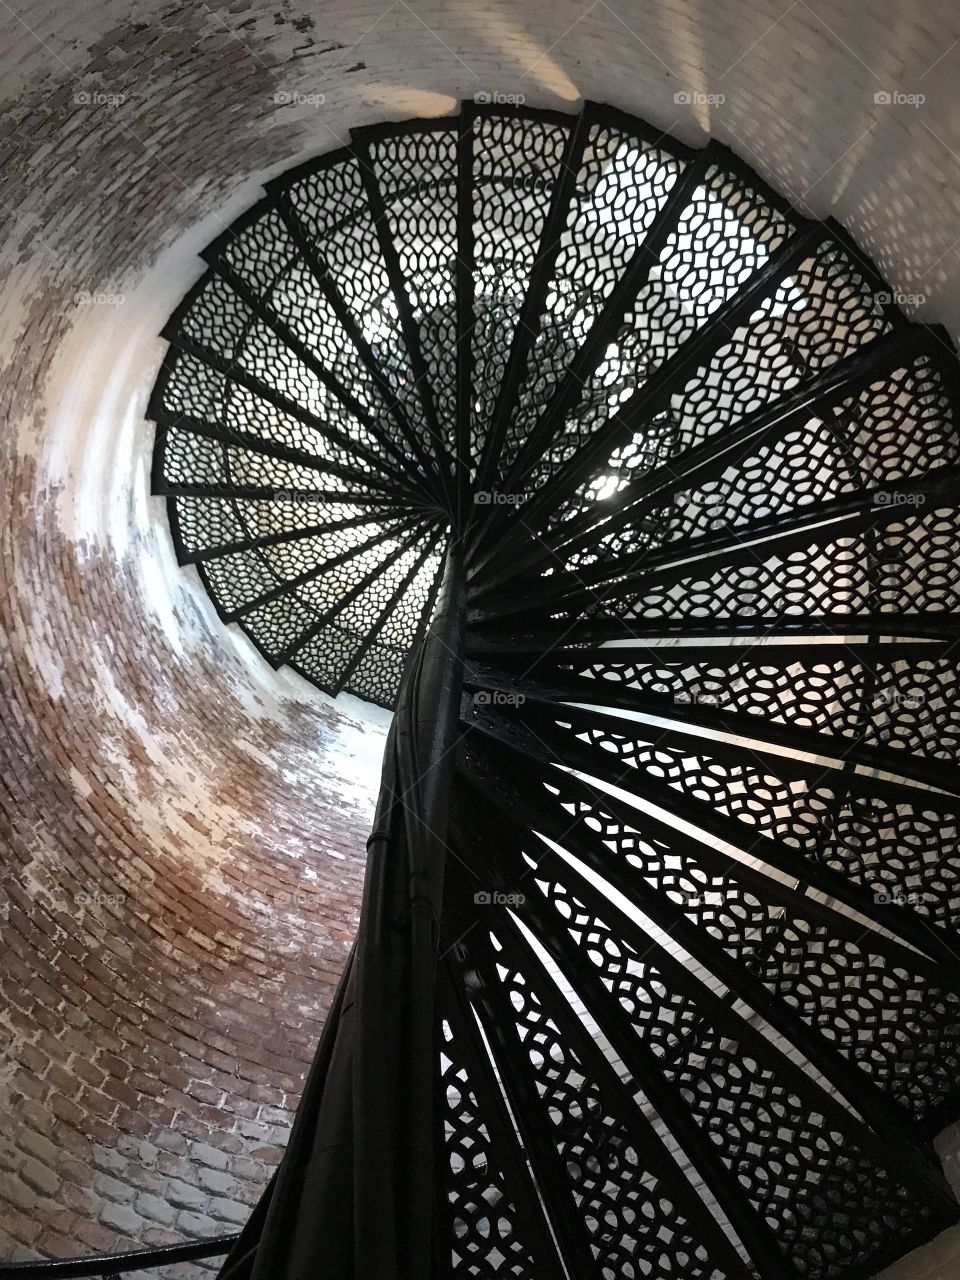 Pensacola Lighthouse spiral staircase.